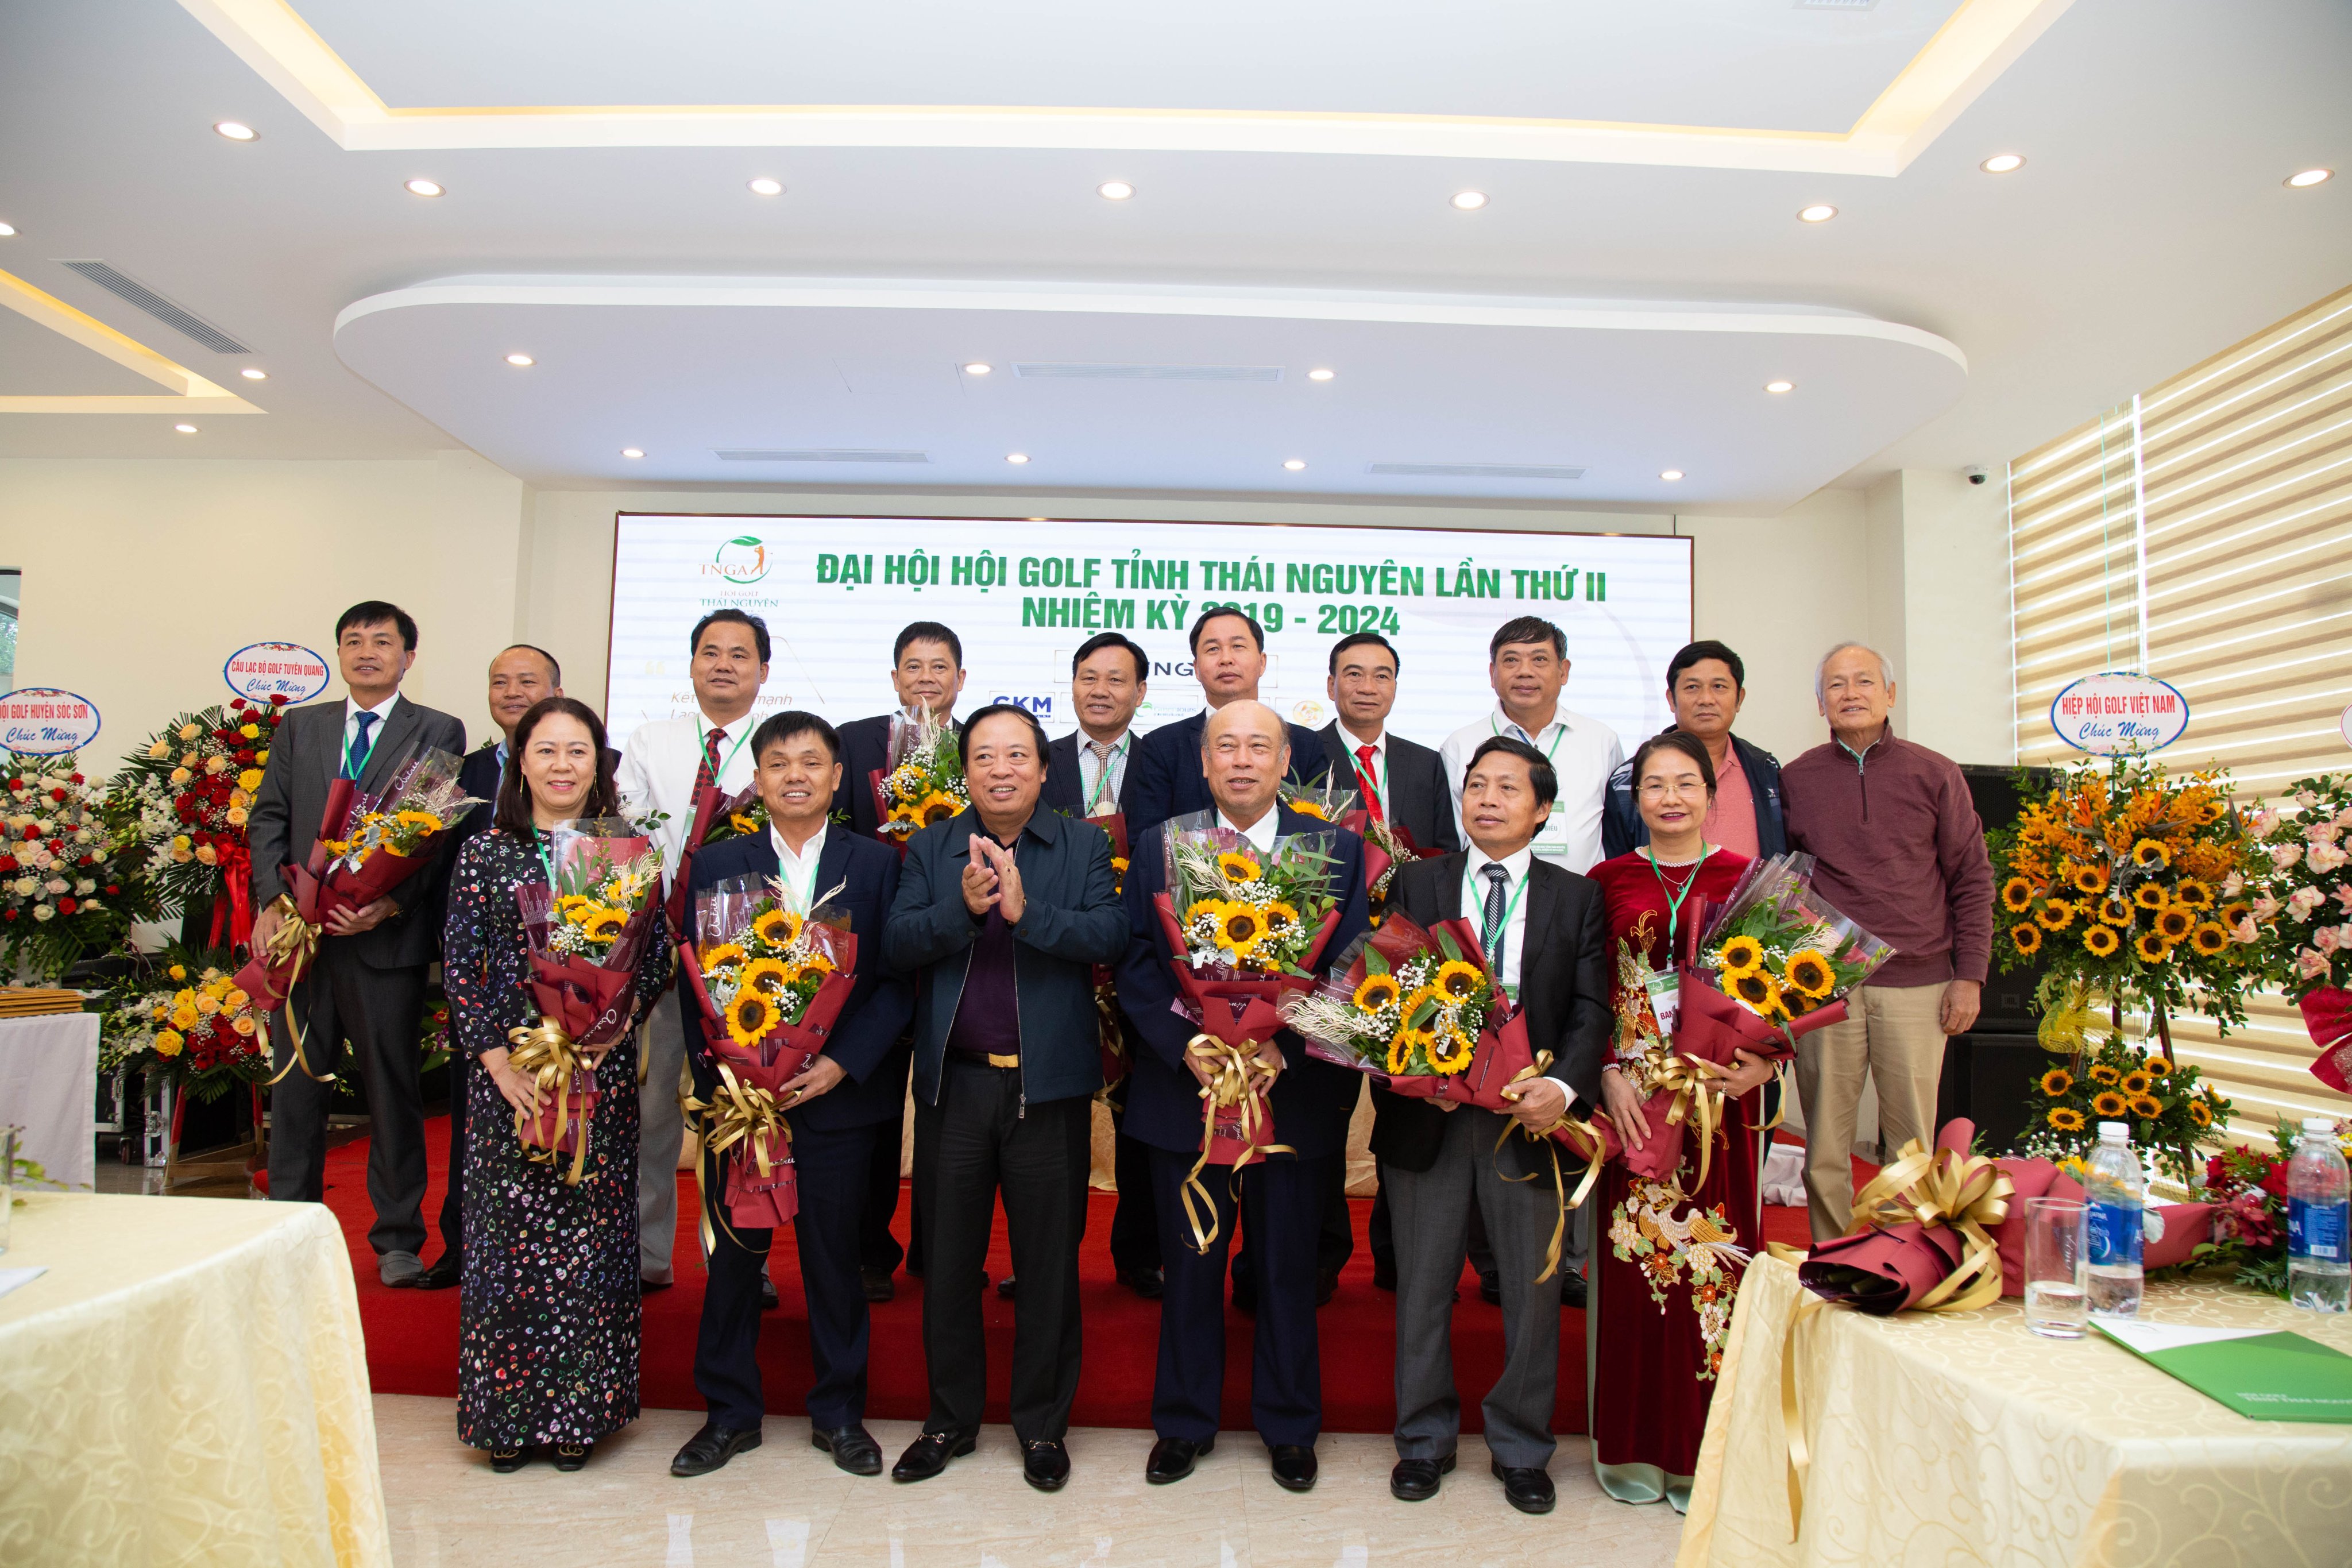 Hội golf tỉnh Thái Nguyên ra mắt Ban Chấp hành Nhiệm kỳ 2019 - 2024